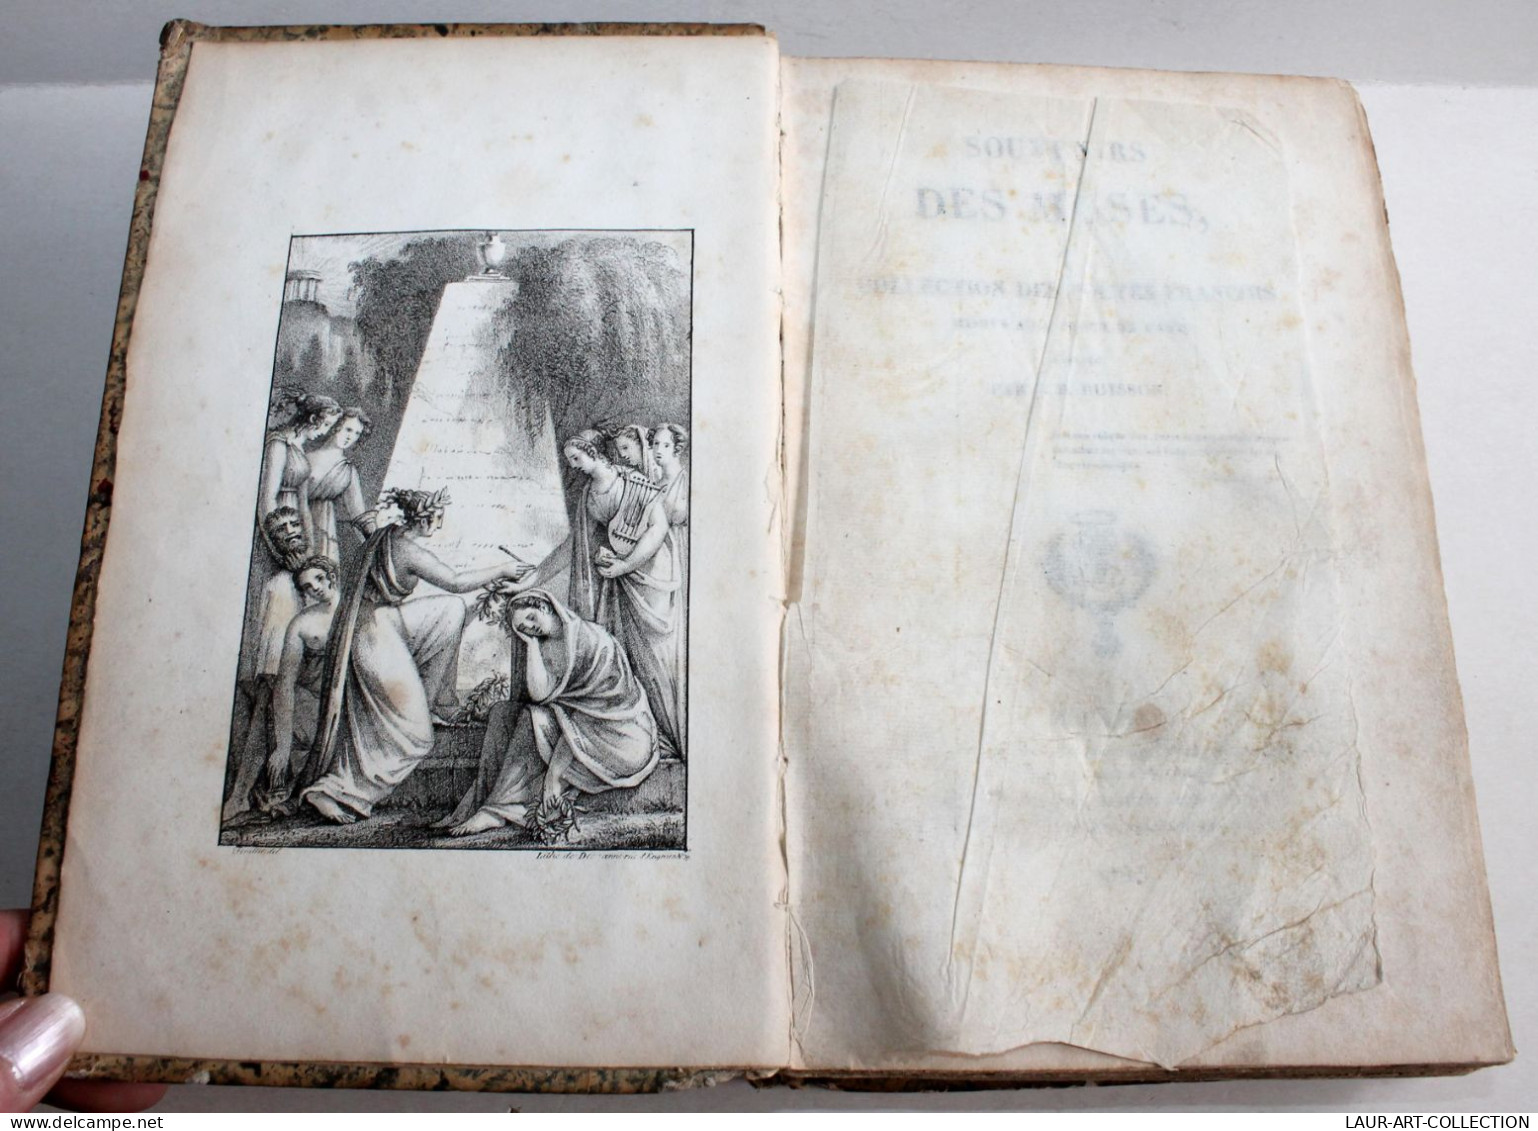 THEATRE, SOUVENIRS DES MUSES Ou COLLECTION DES POETES FRANCOIS De J BUISSON 1823 / ANCIEN LIVRE XIXe SIECLE (1803.110) - Auteurs Français